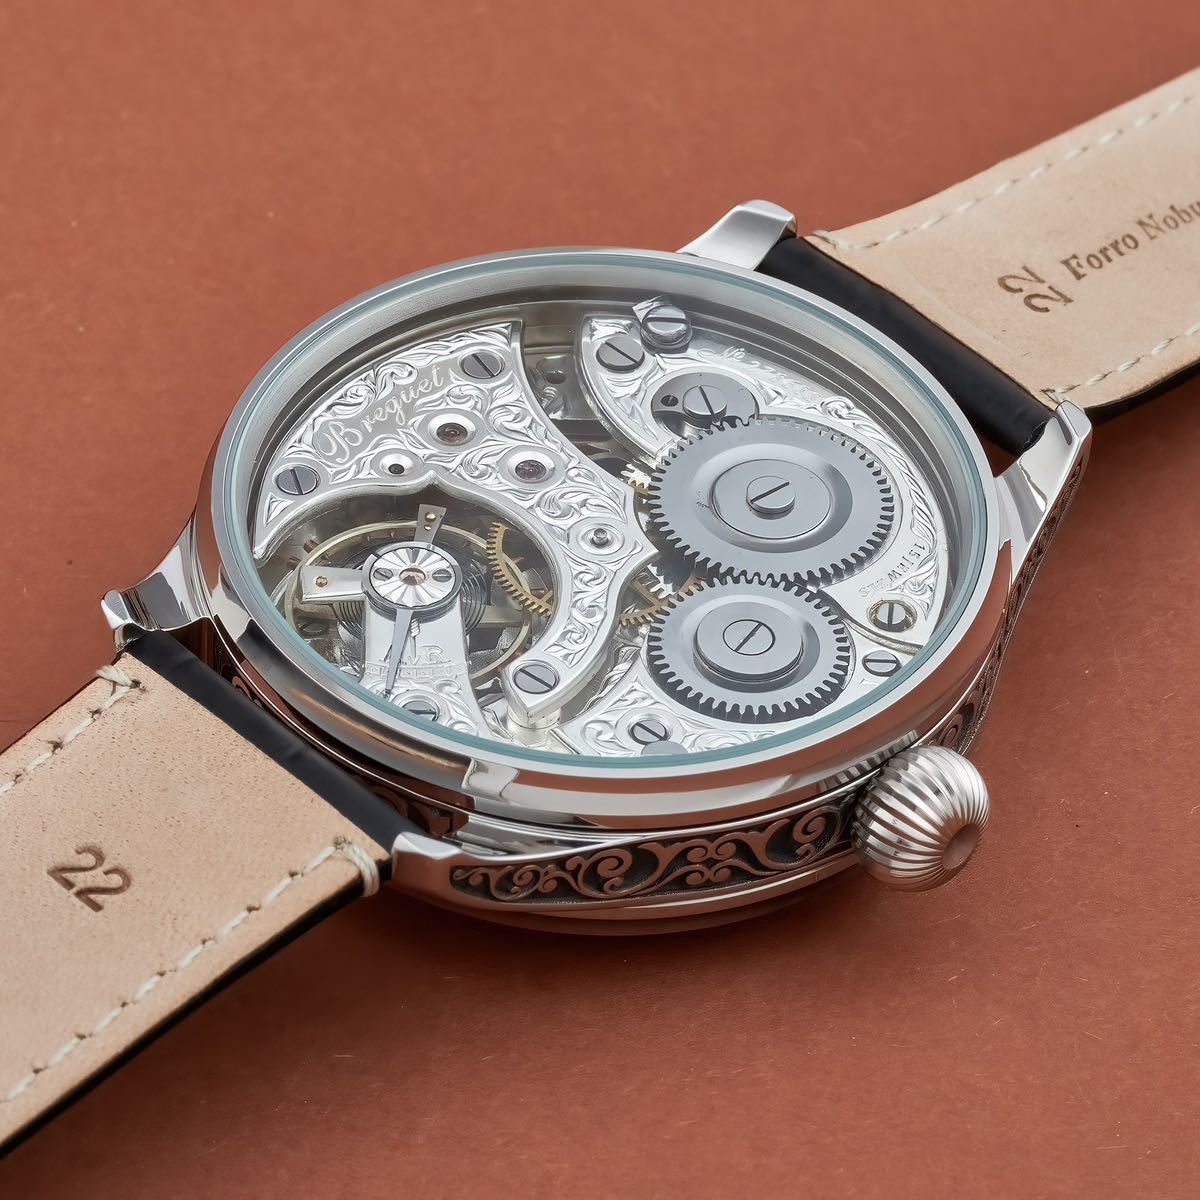 アンティーク Marriage watch Breguet 懐中時計をアレンジした48mmのメンズ腕時計 半年保証 手巻き スケルトン